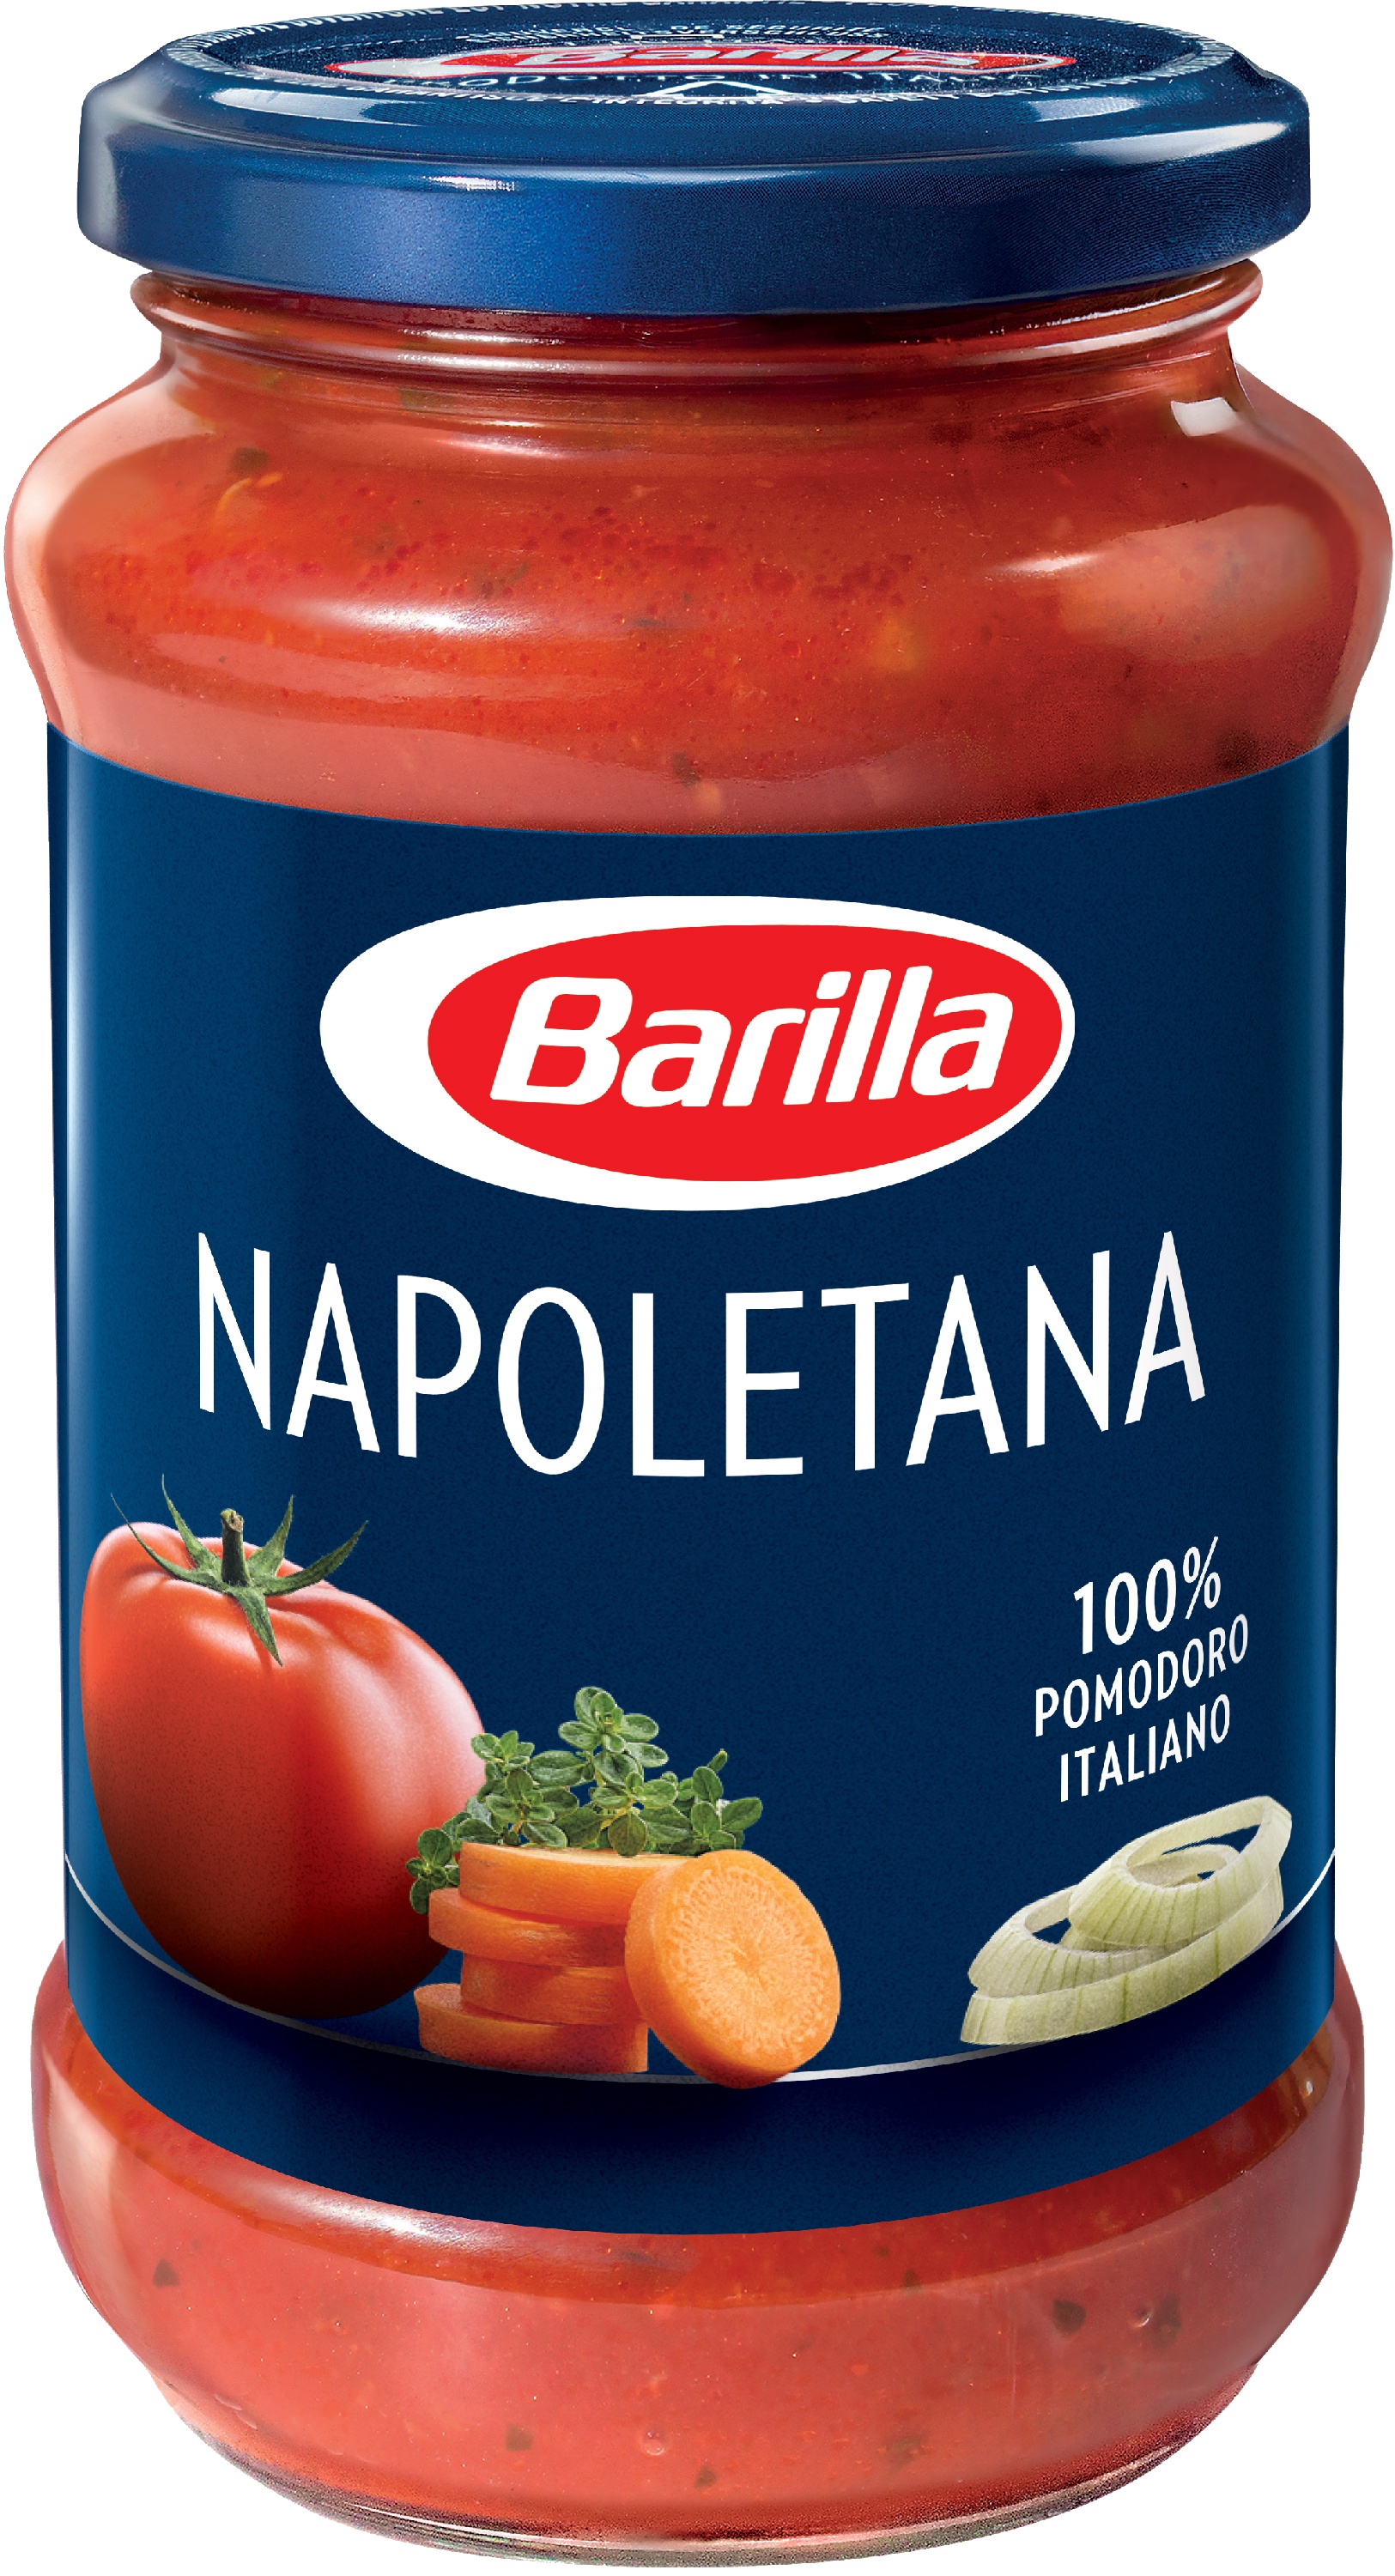 Slika za Sos napoletana sa paradajzom i začinima Barilla 400g